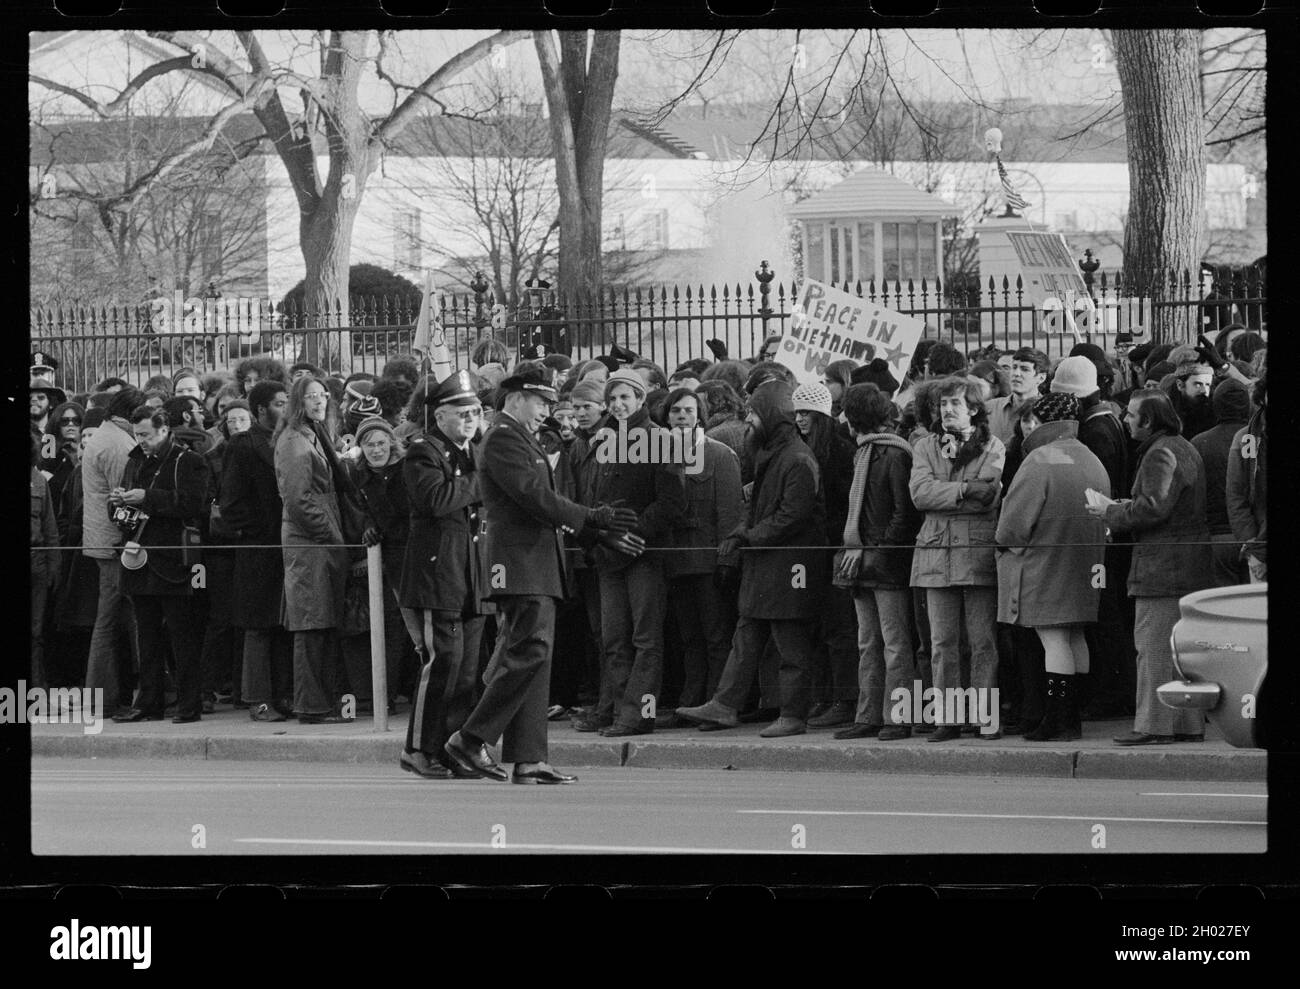 Vietnamesische Antikriegsprotestanten demonstrieren vor dem Weißen Haus, Washington, DC, 2/10/1971. Foto von Warren K. Leffler. Stockfoto